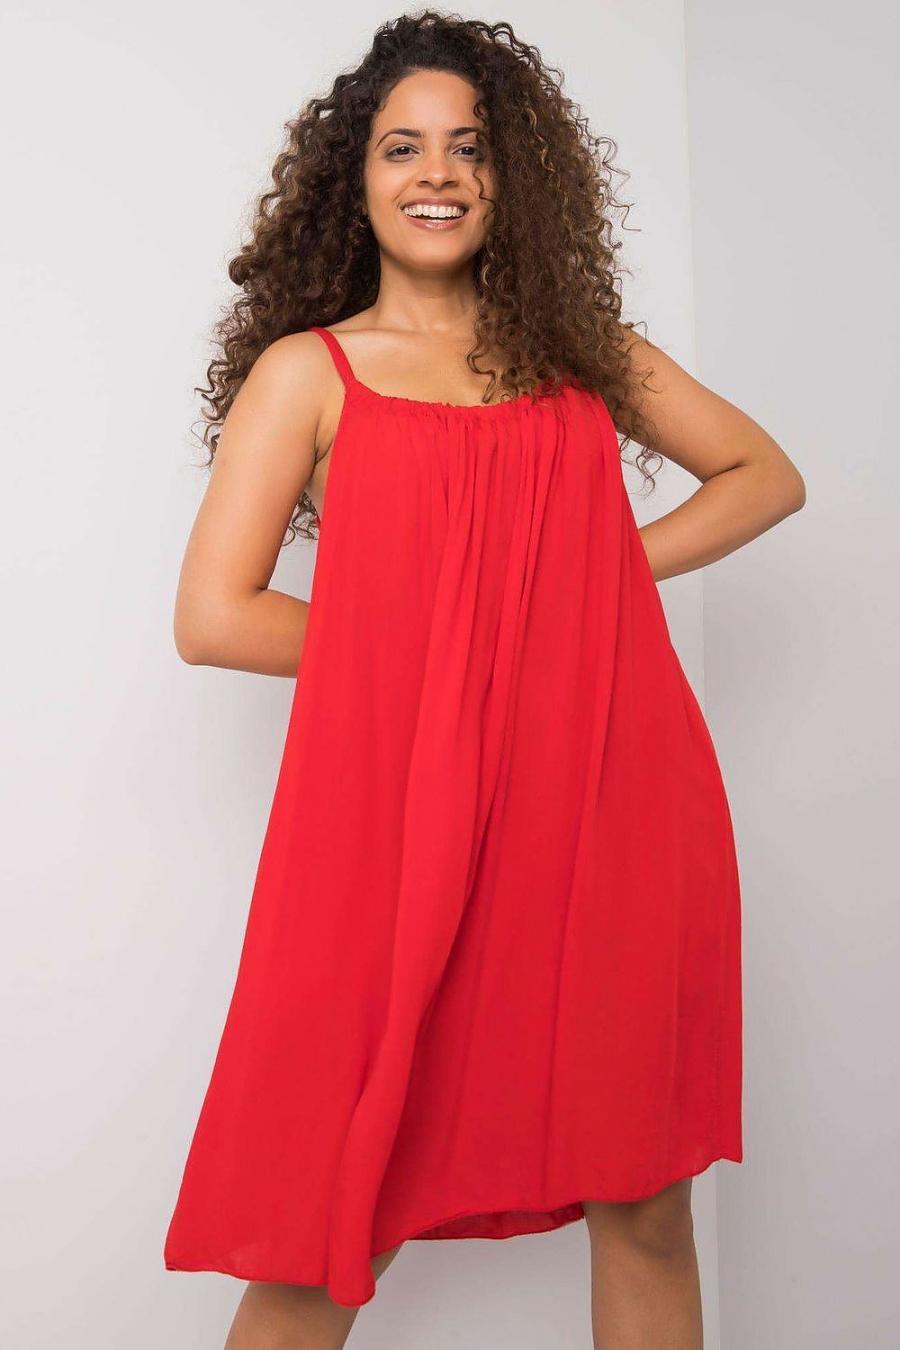 Ostatní značky šaty dámské 165898 - červená - velikost L